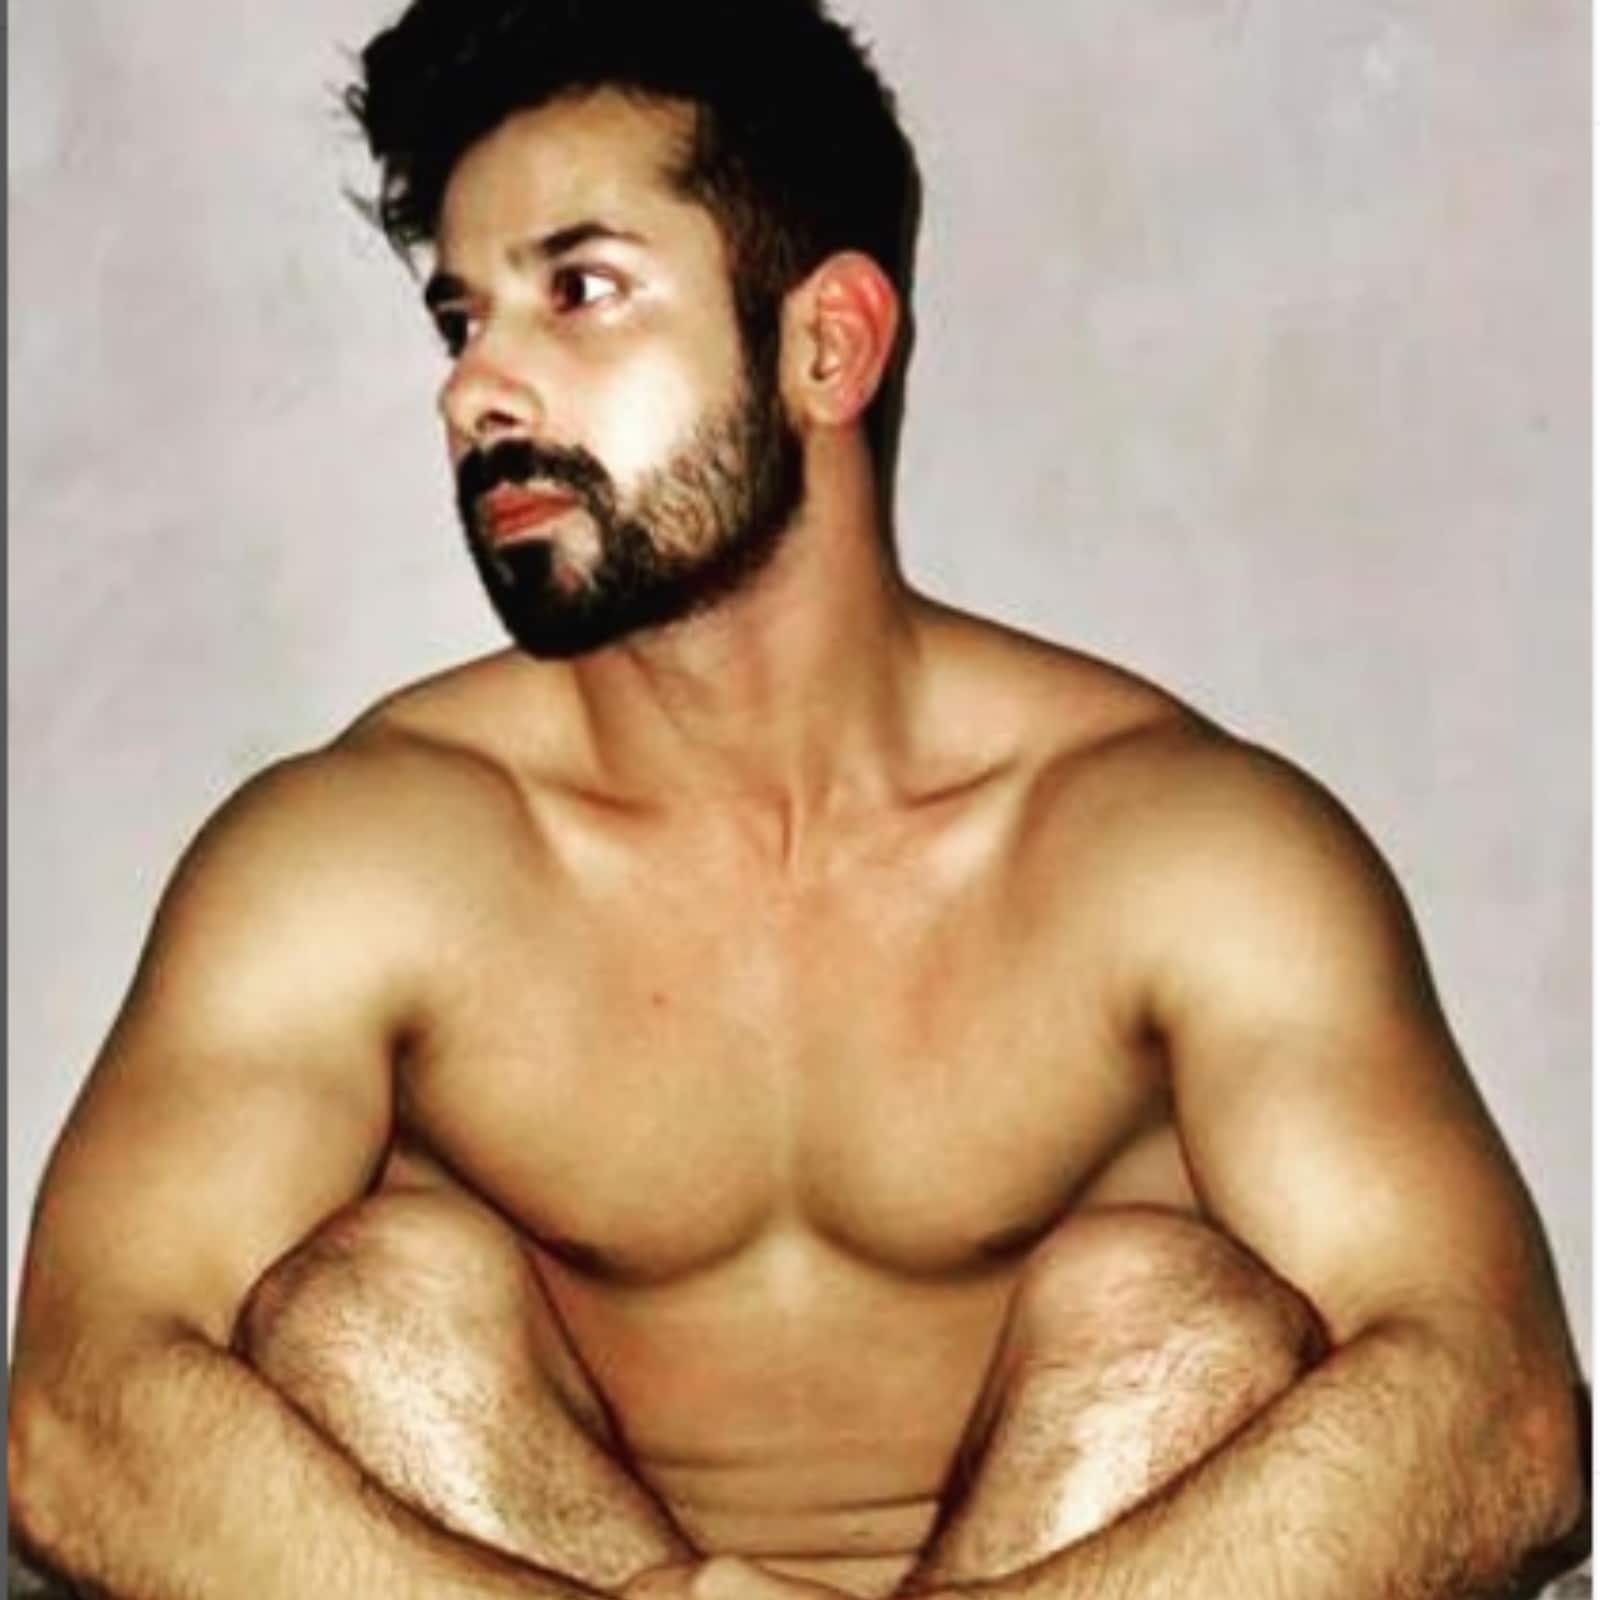 1600px x 1600px - Kunal Verma Poses Nude in Latest Picture; Fan Says 'Ranveer Singh Ne Ladke  Bigaad Diye' - News18